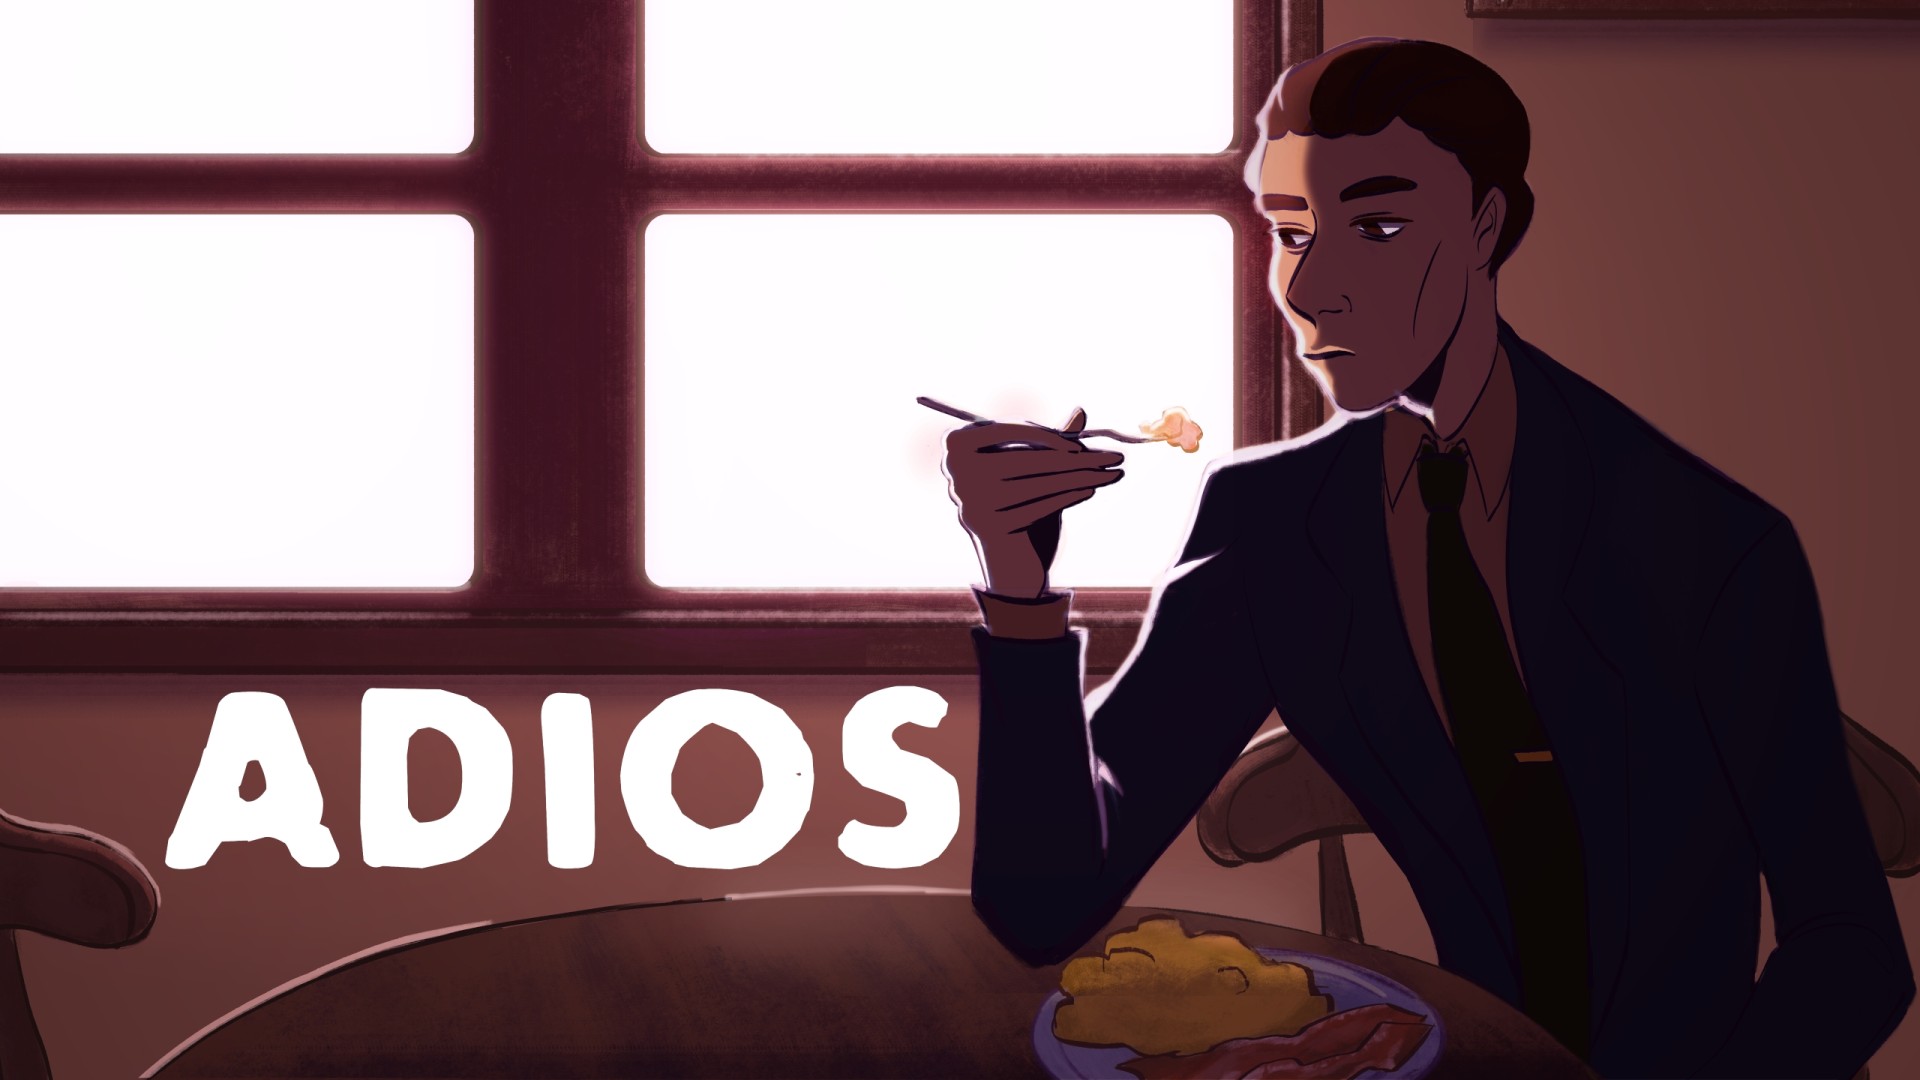 Das Hauptmotiv für Adios, das die Hauptfigur an einem Tisch sitzend beim Frühstück zeigt